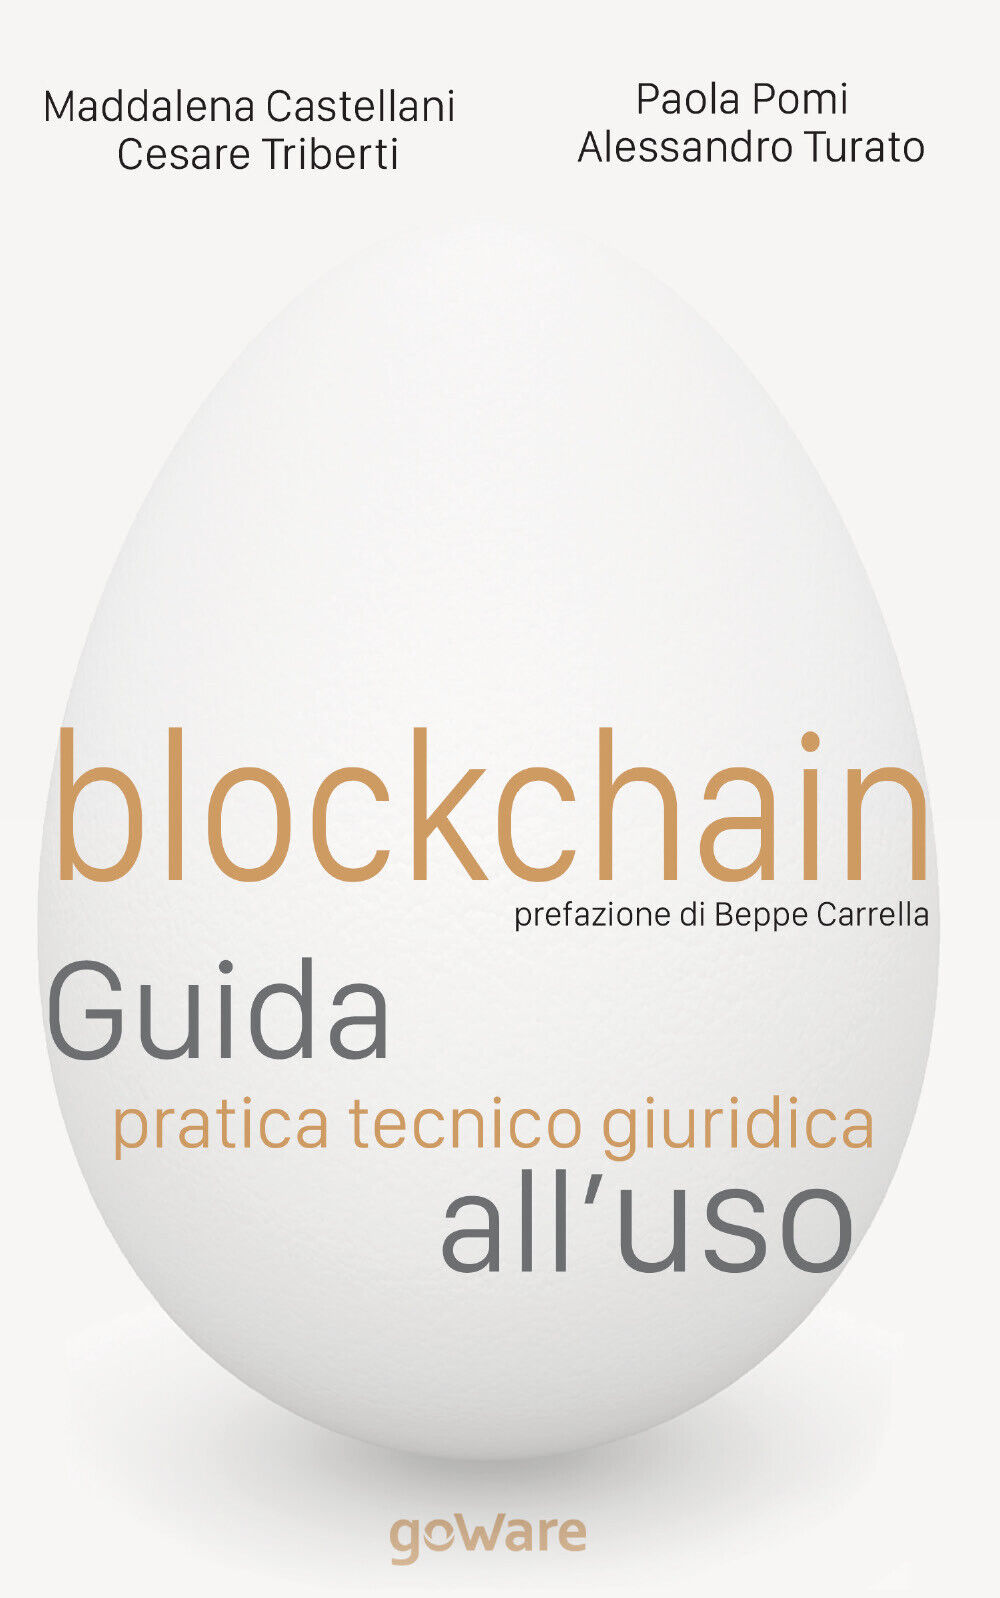 Blockchain. Guida pratica tecnico giuridica alL'uso, GoWare, 2019